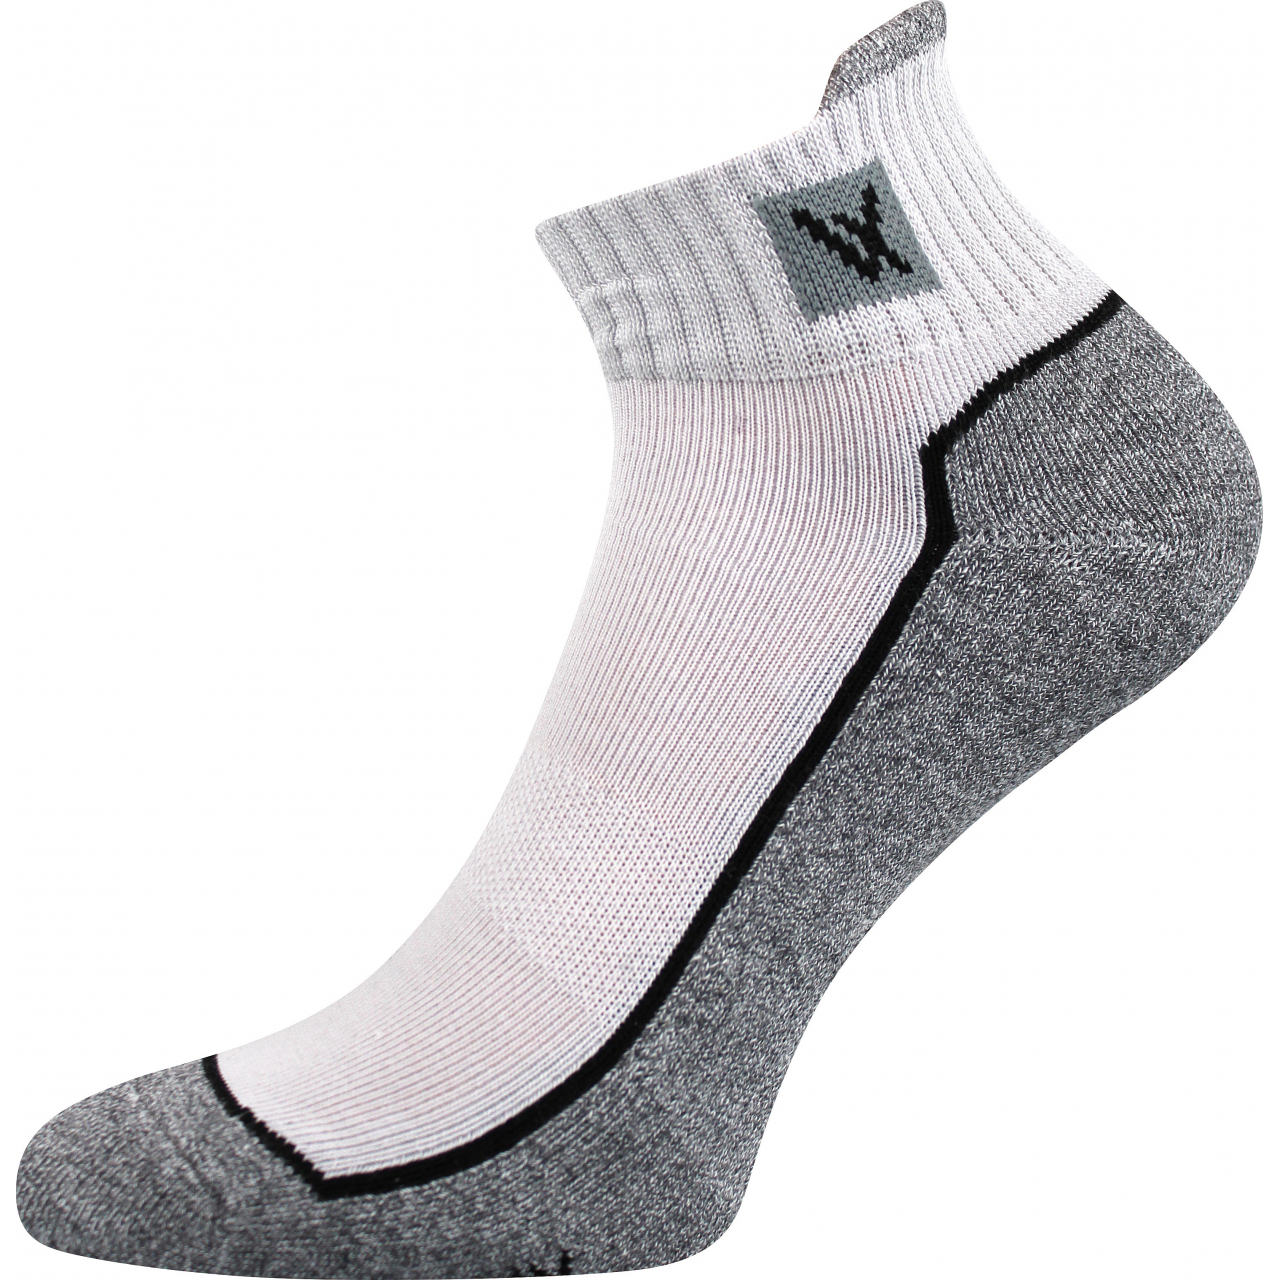 Ponožky unisex sportovní Voxx Nesty 01 - světle šedé-šedé, 39-42